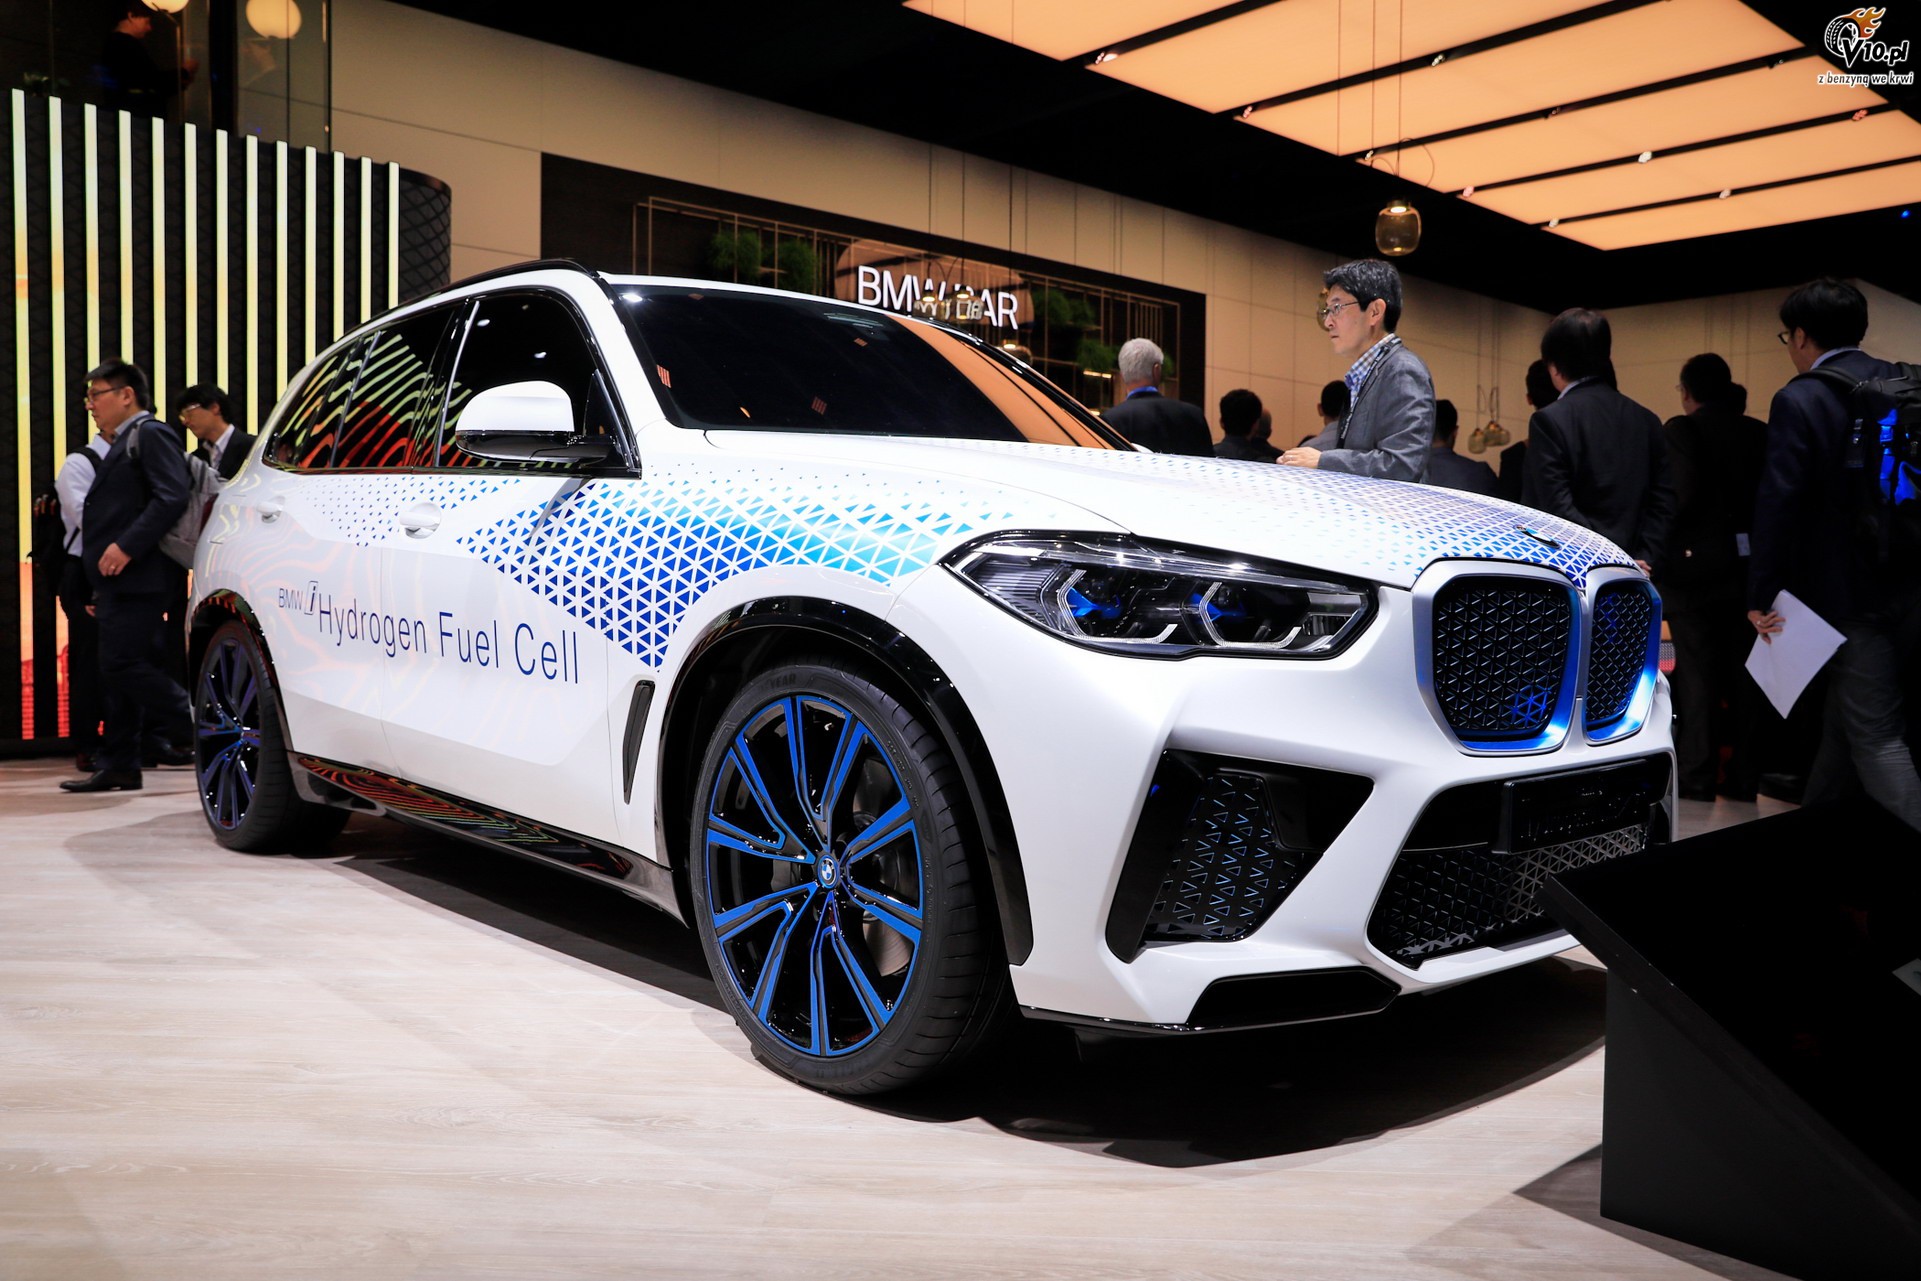 BMW X5 i Next Hydrogen